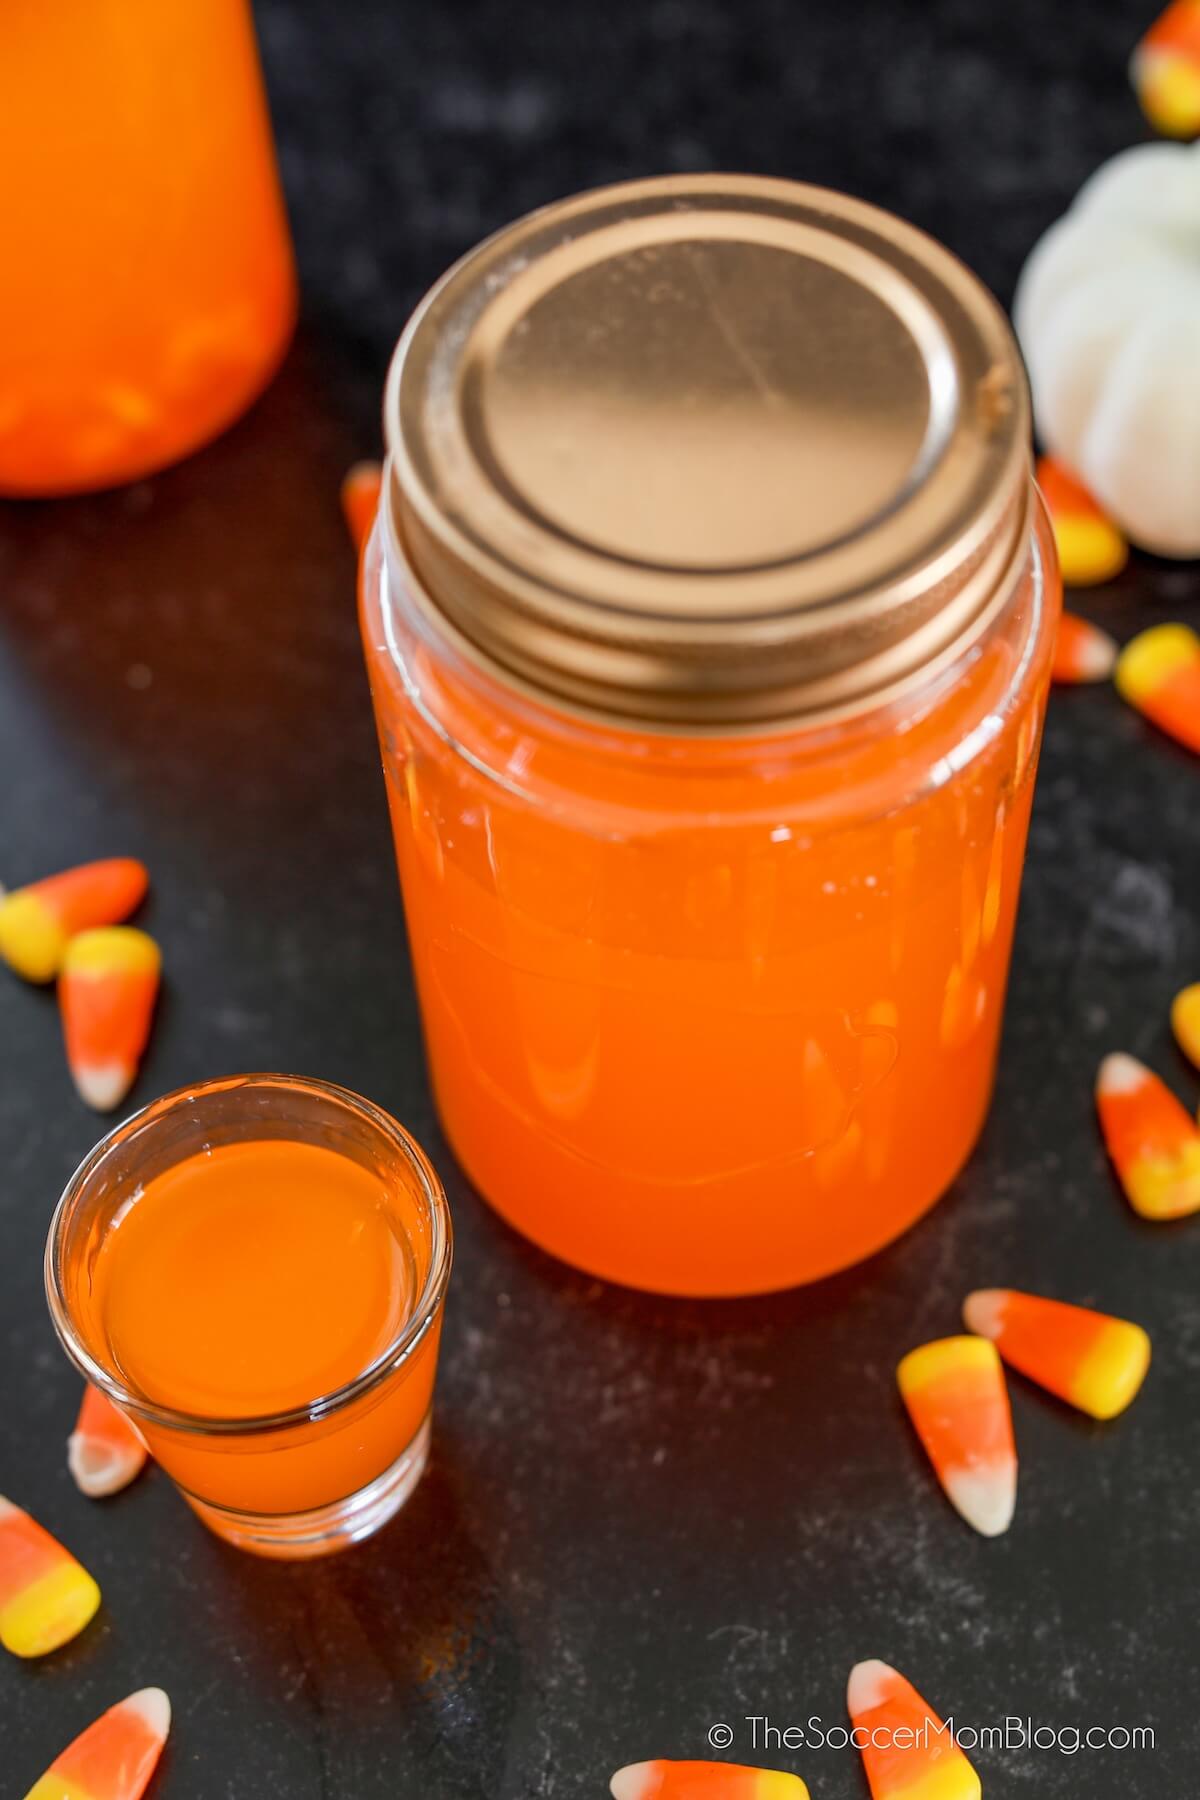 mason jar and shot glass with orange moonshine